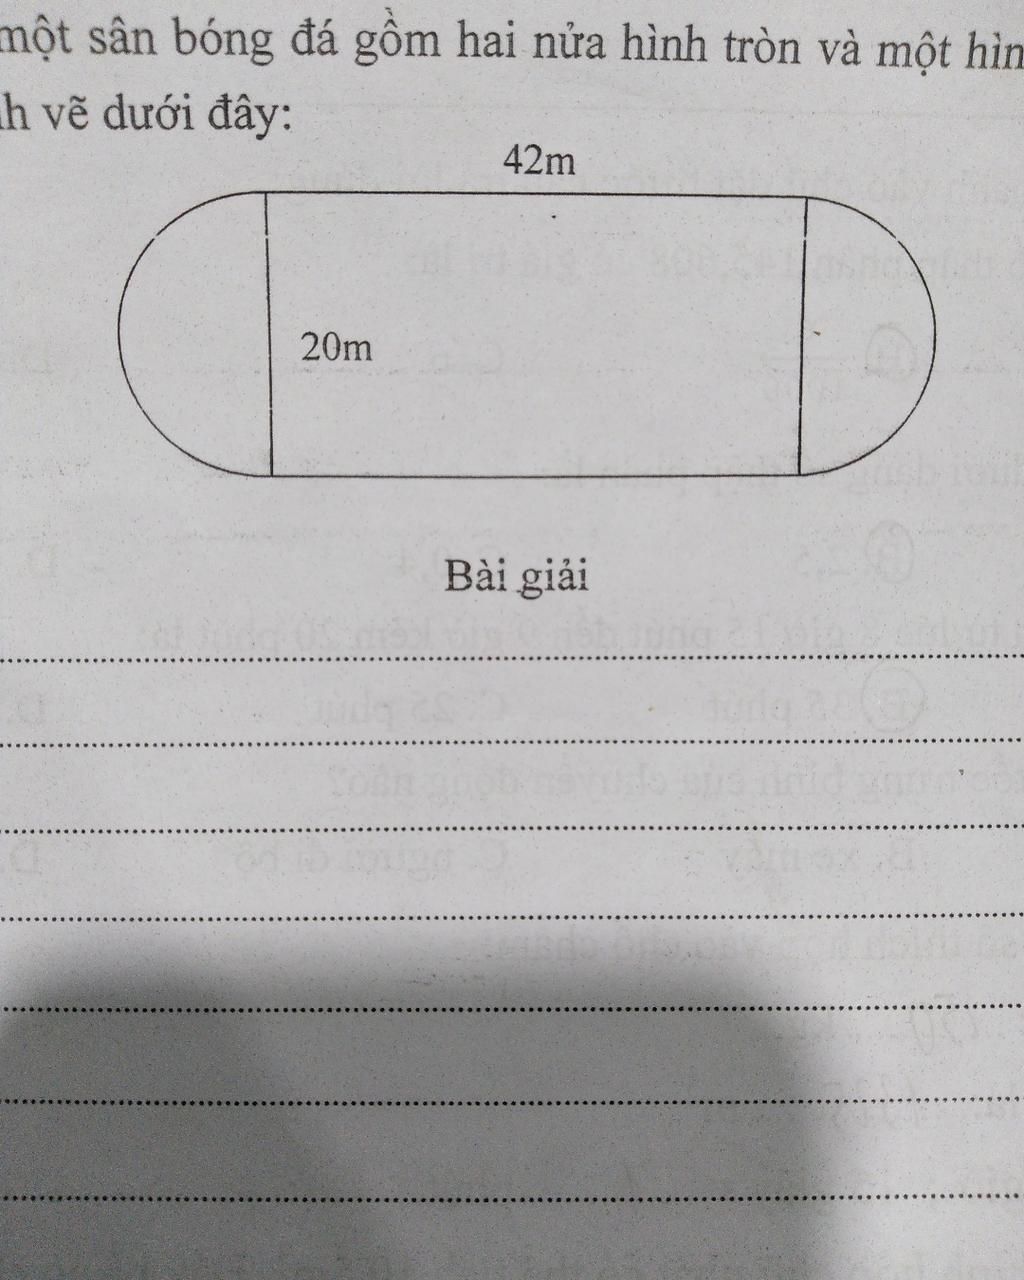 Tính diện tích một sân bóng đá gồm hai nửa hình tròn và một hình chữ nhật có  kích thước ghi trong hình vẽ dưới đâymột sân bóng đá gồm hai nửa